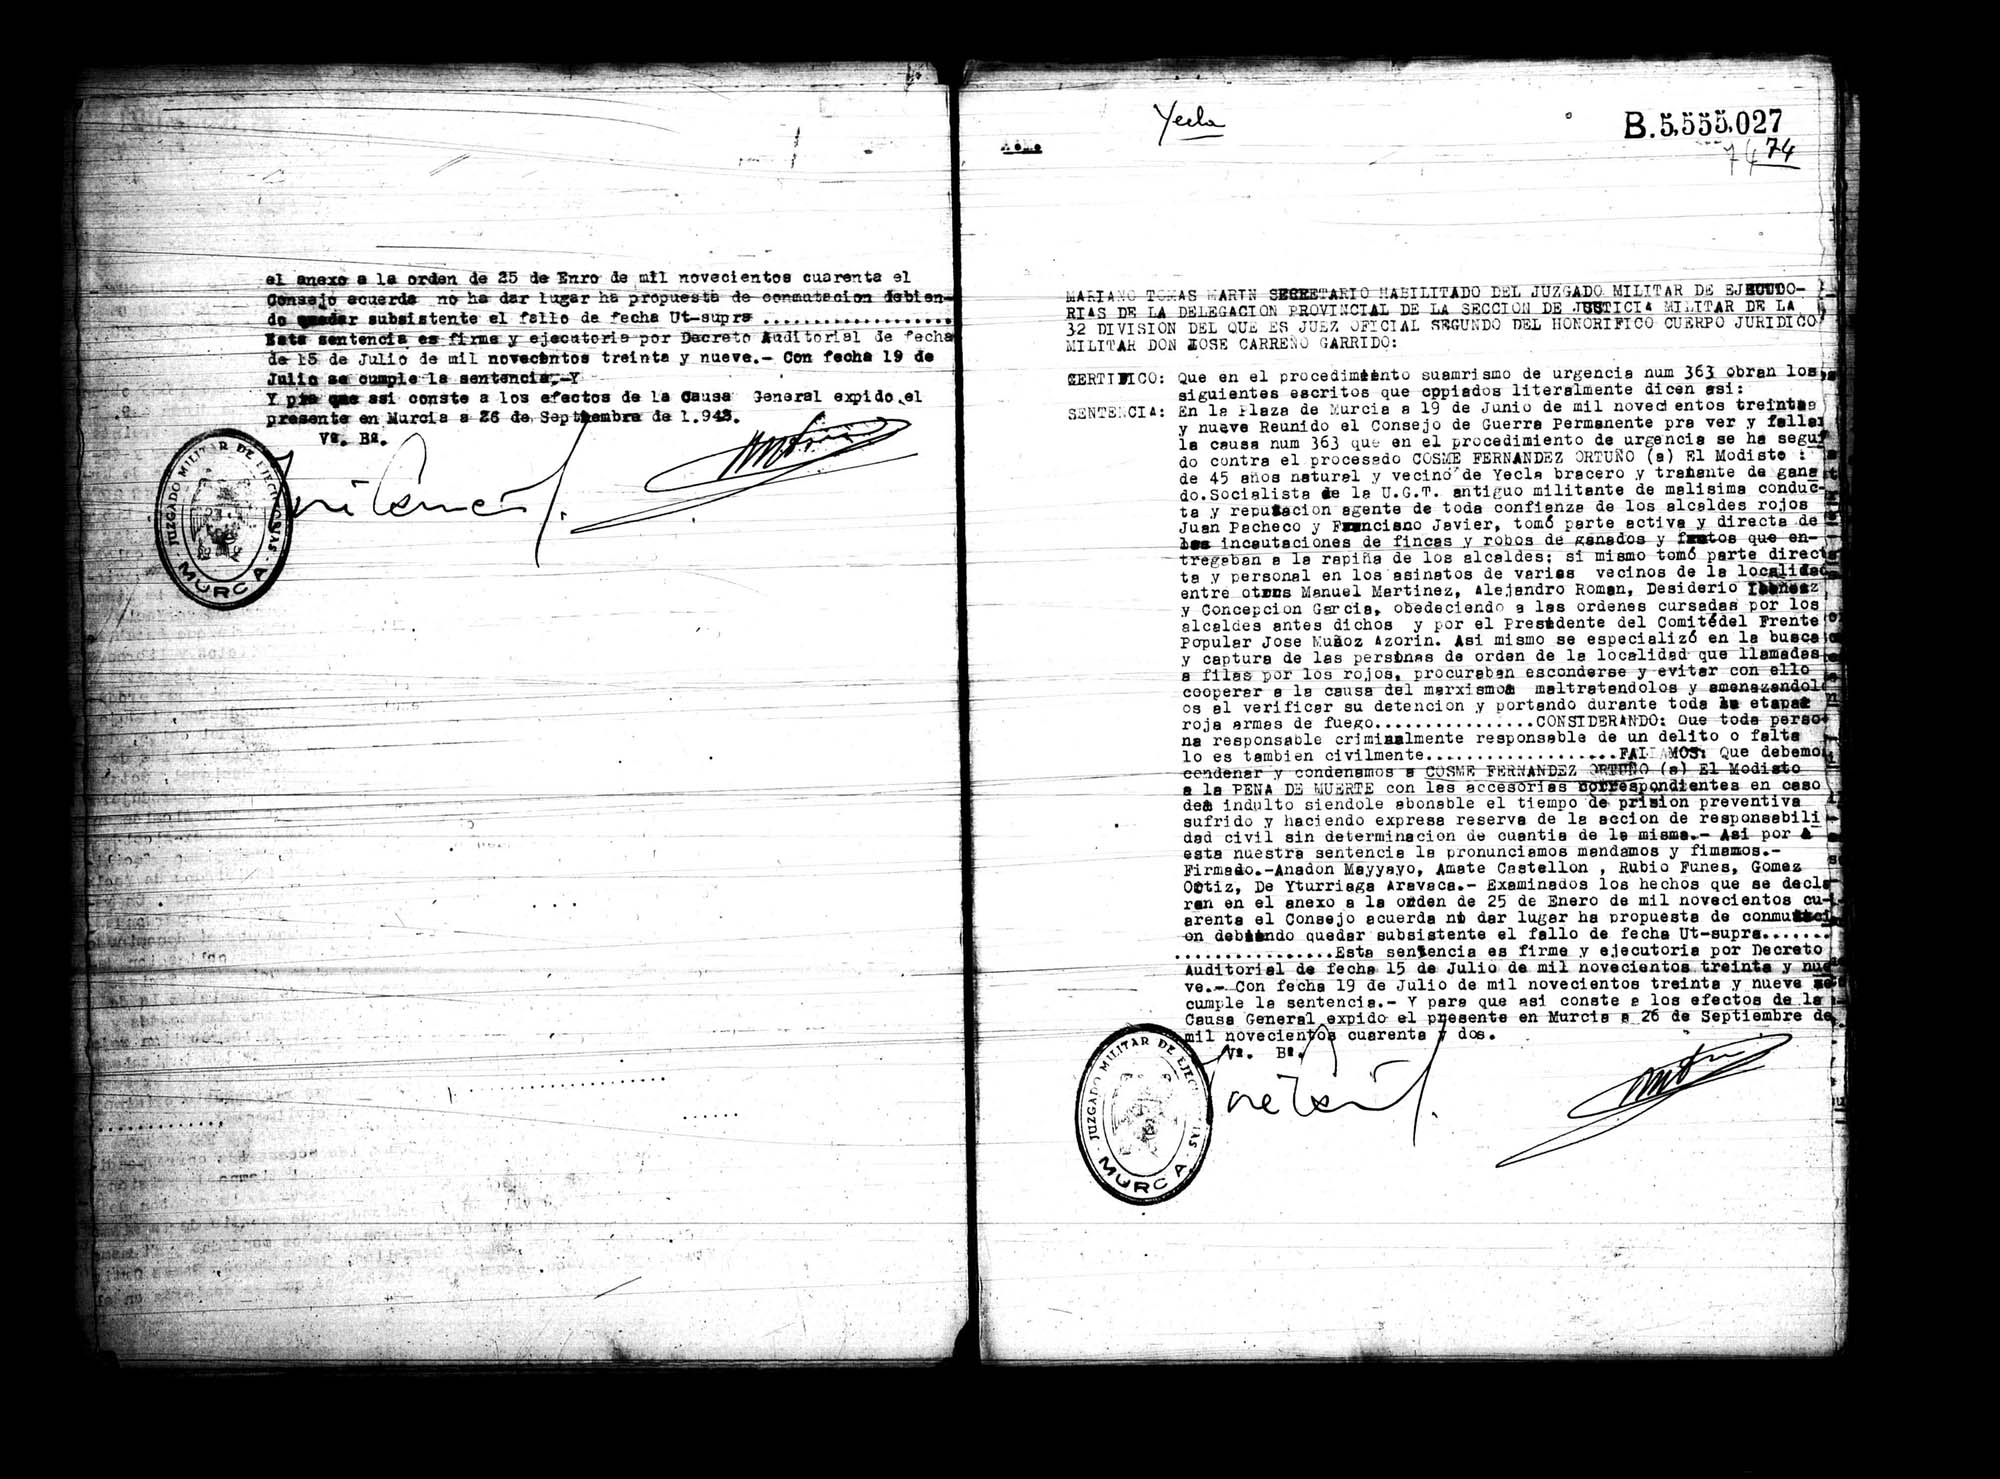 Certificado de la sentencia pronunciada contra Francisco Javier Ortega, causa 363, el 19 de junio de 1939 en Murcia.